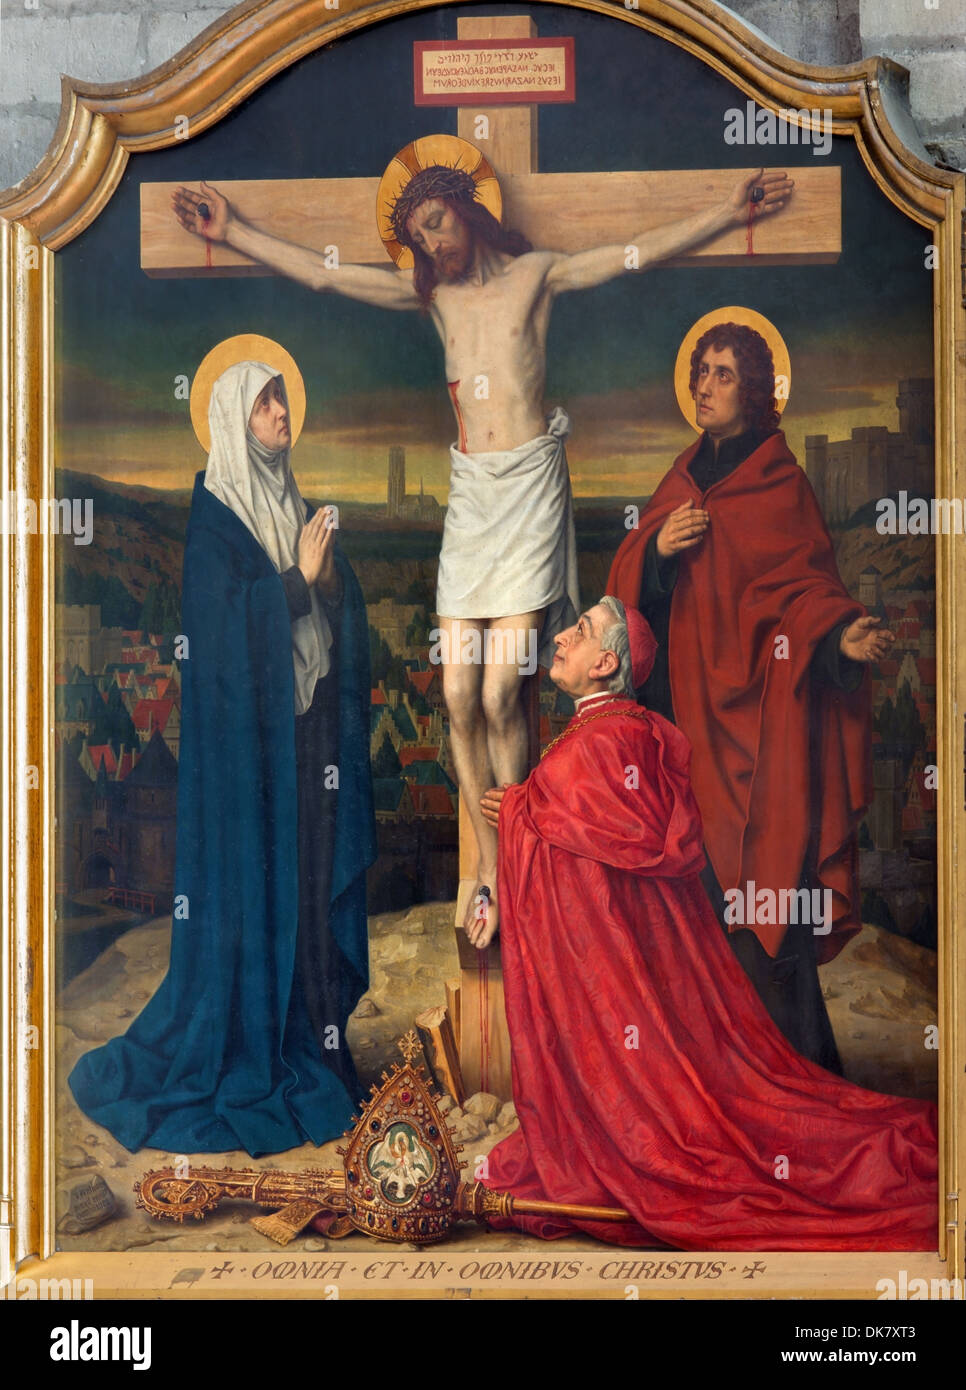 Malines, Belgique - septembre 6 : Peinture de la Crucifixion en scène la cathédrale Saint-rombaut Banque D'Images